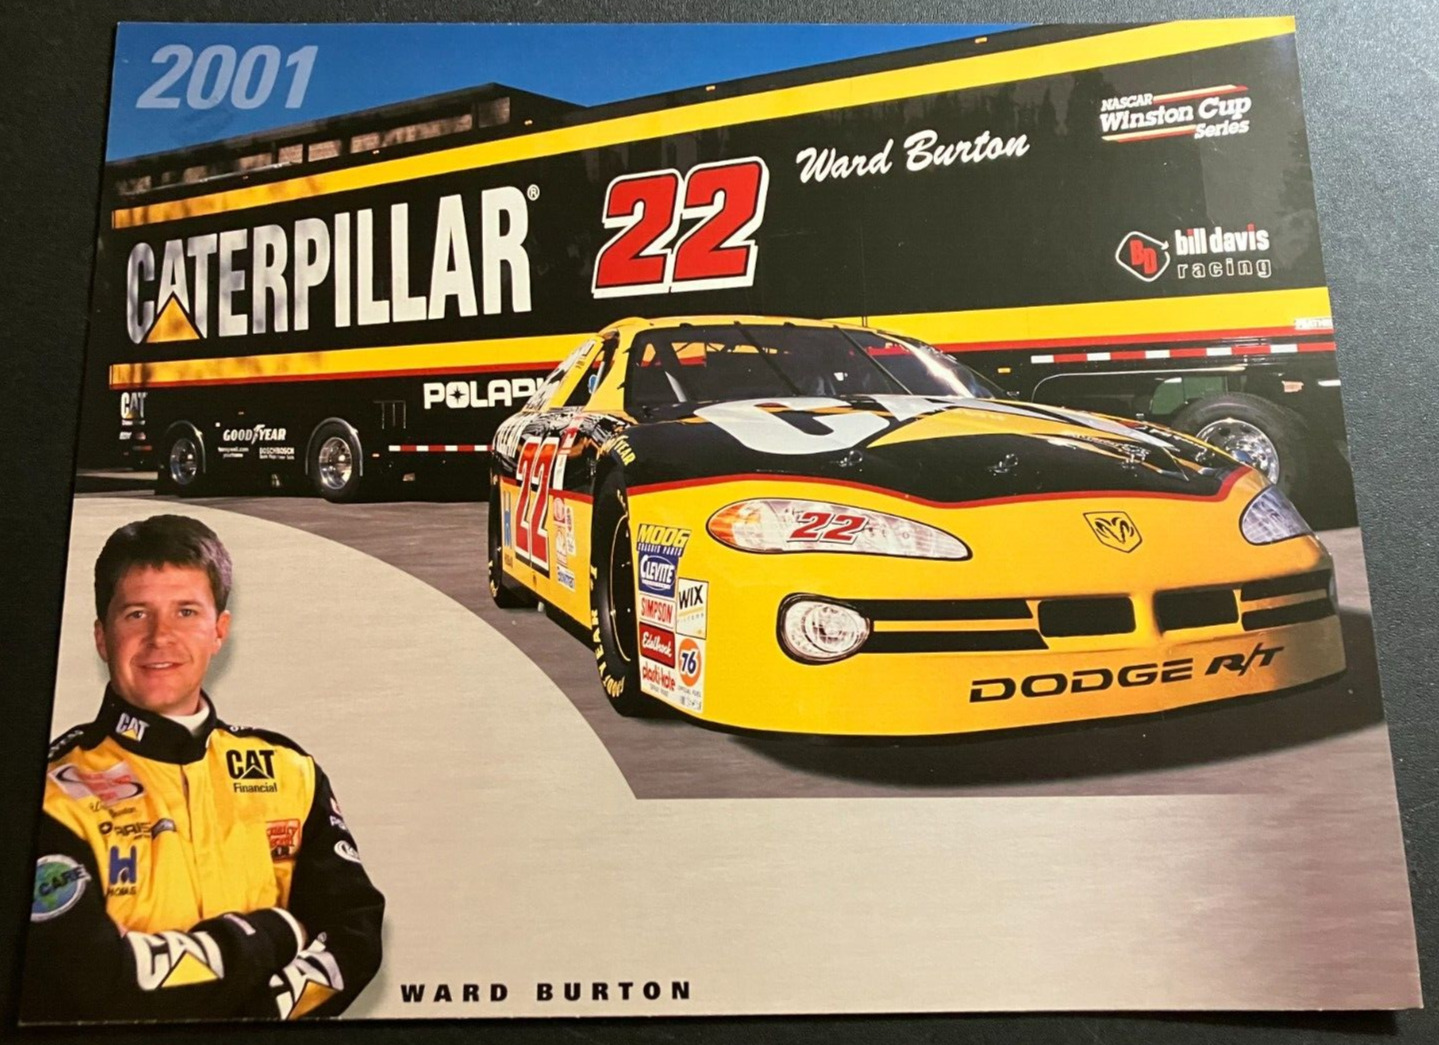 2001 Ward Burton #22 CAT Caterpillar Dodge R/T - NASCAR Hero Card Handout